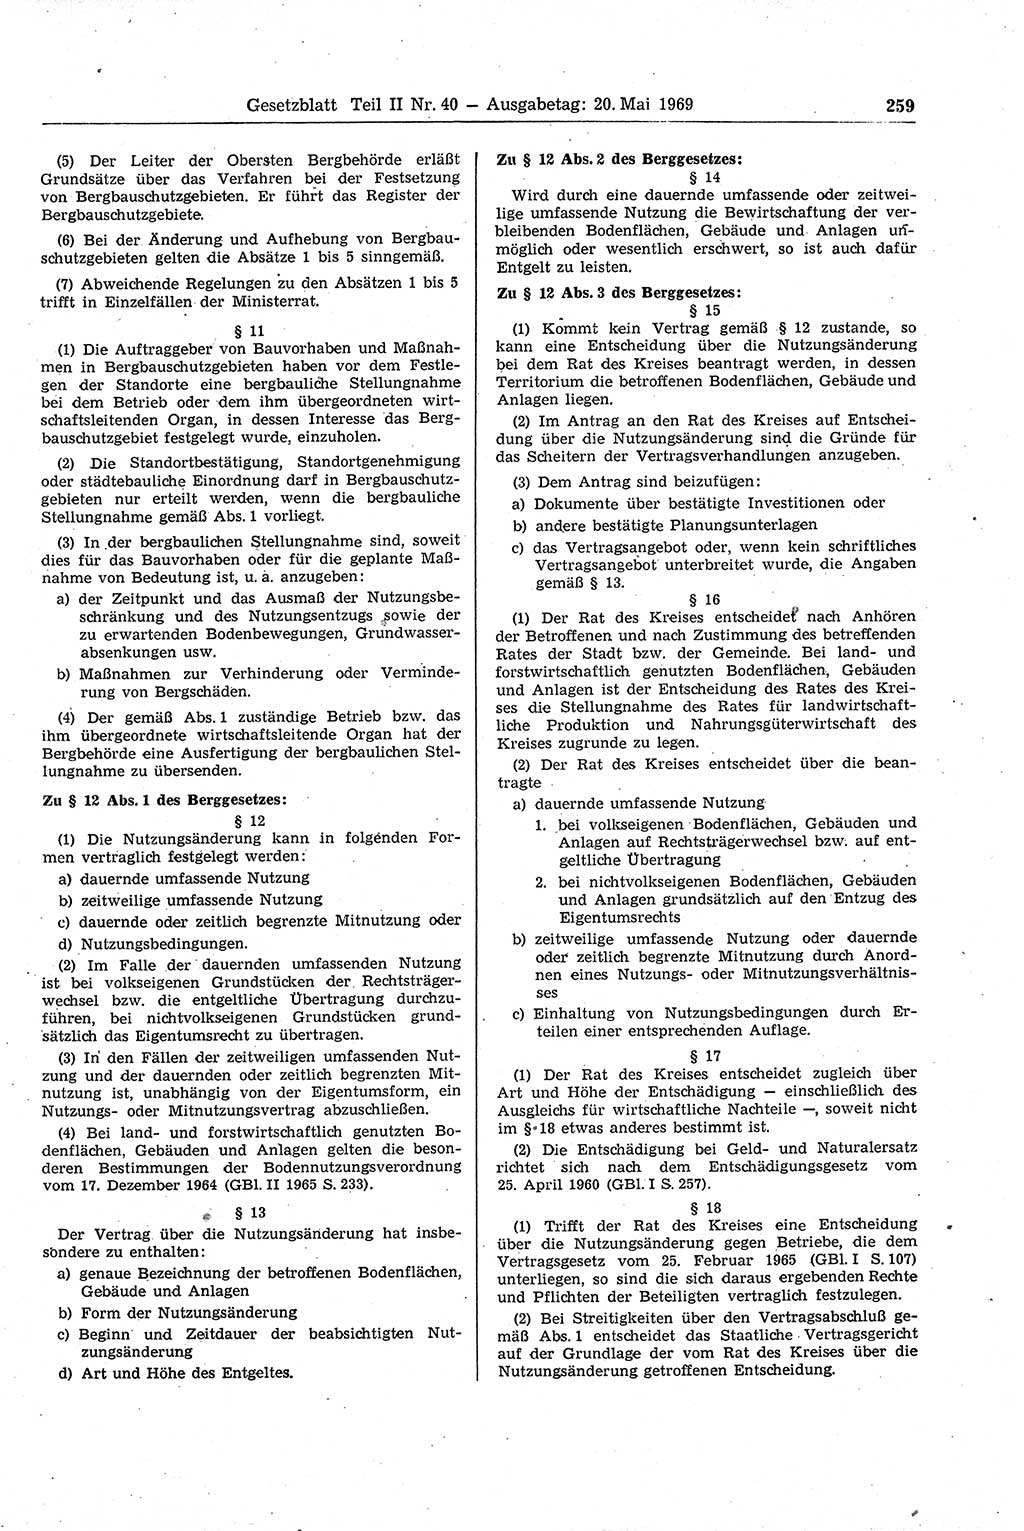 Gesetzblatt (GBl.) der Deutschen Demokratischen Republik (DDR) Teil ⅠⅠ 1969, Seite 259 (GBl. DDR ⅠⅠ 1969, S. 259)